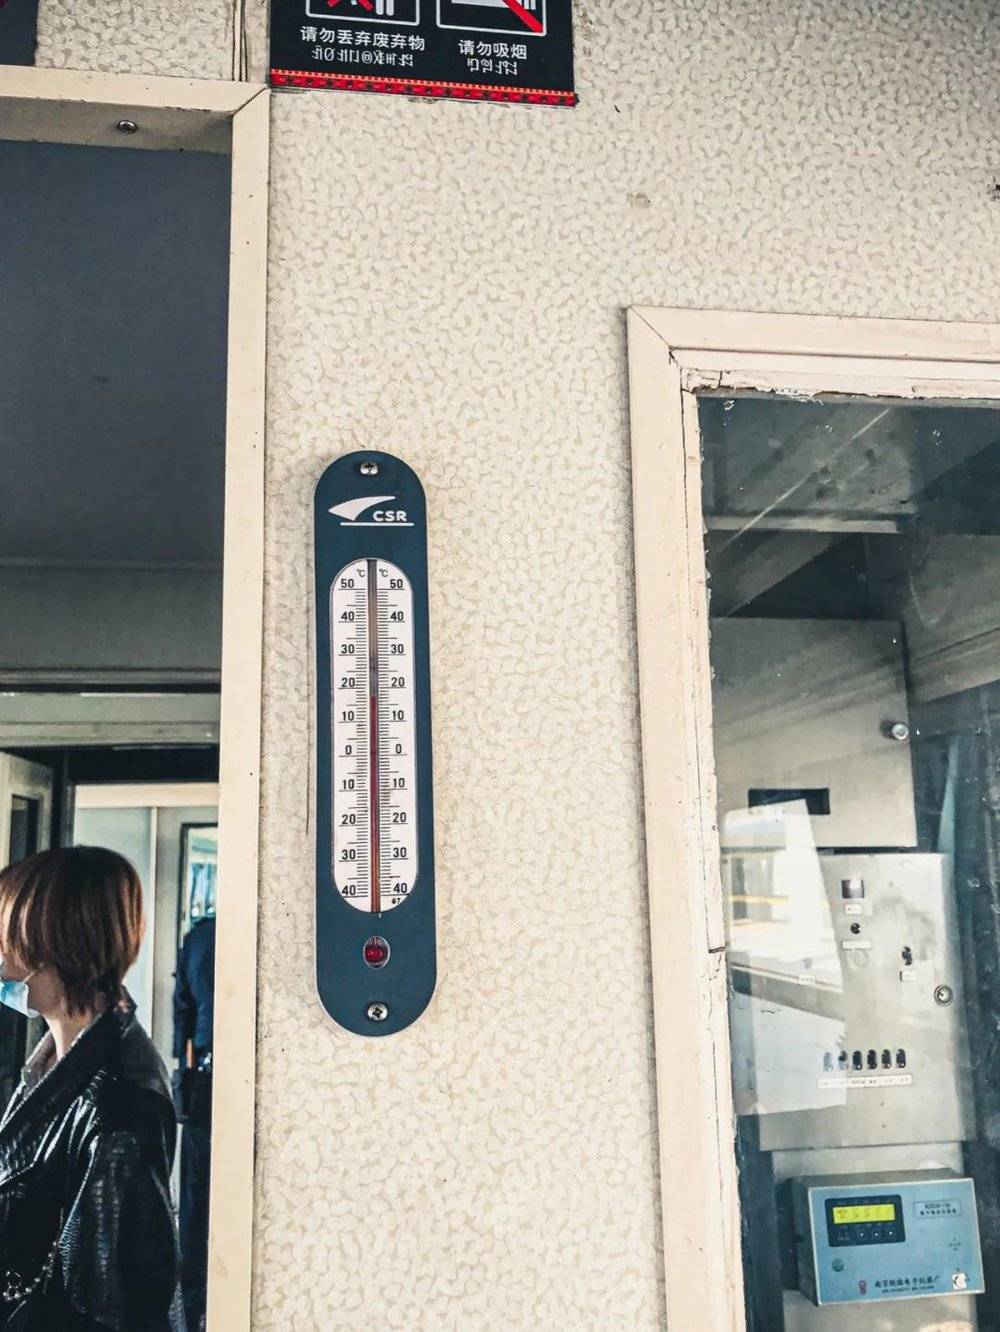 温度计显示现在室内温度17摄氏度<br>